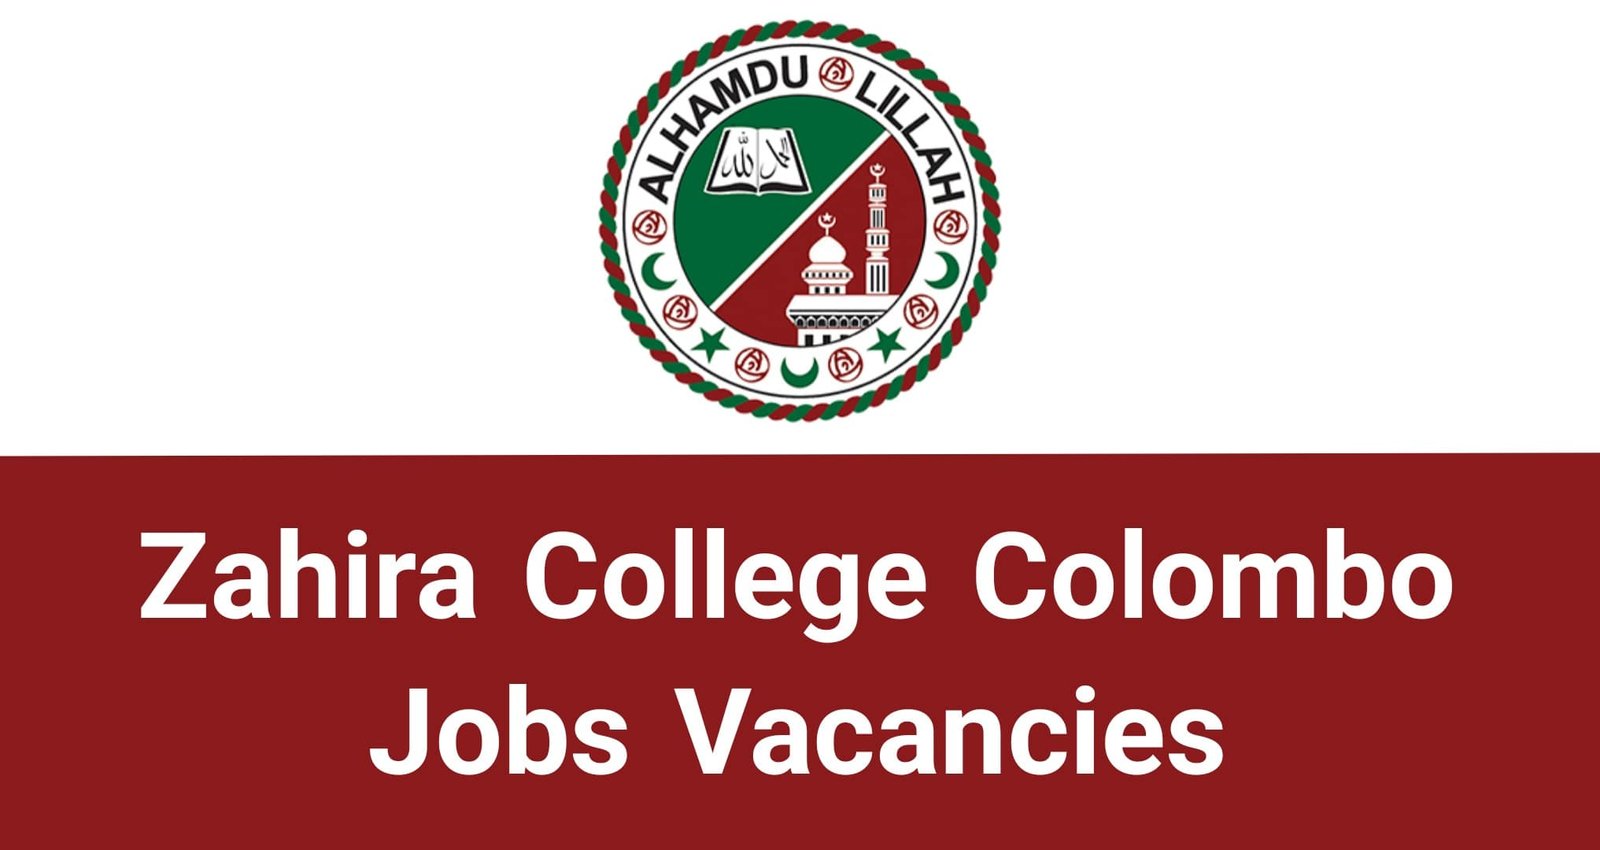 Zahira College Colombo Jobs Vacancies